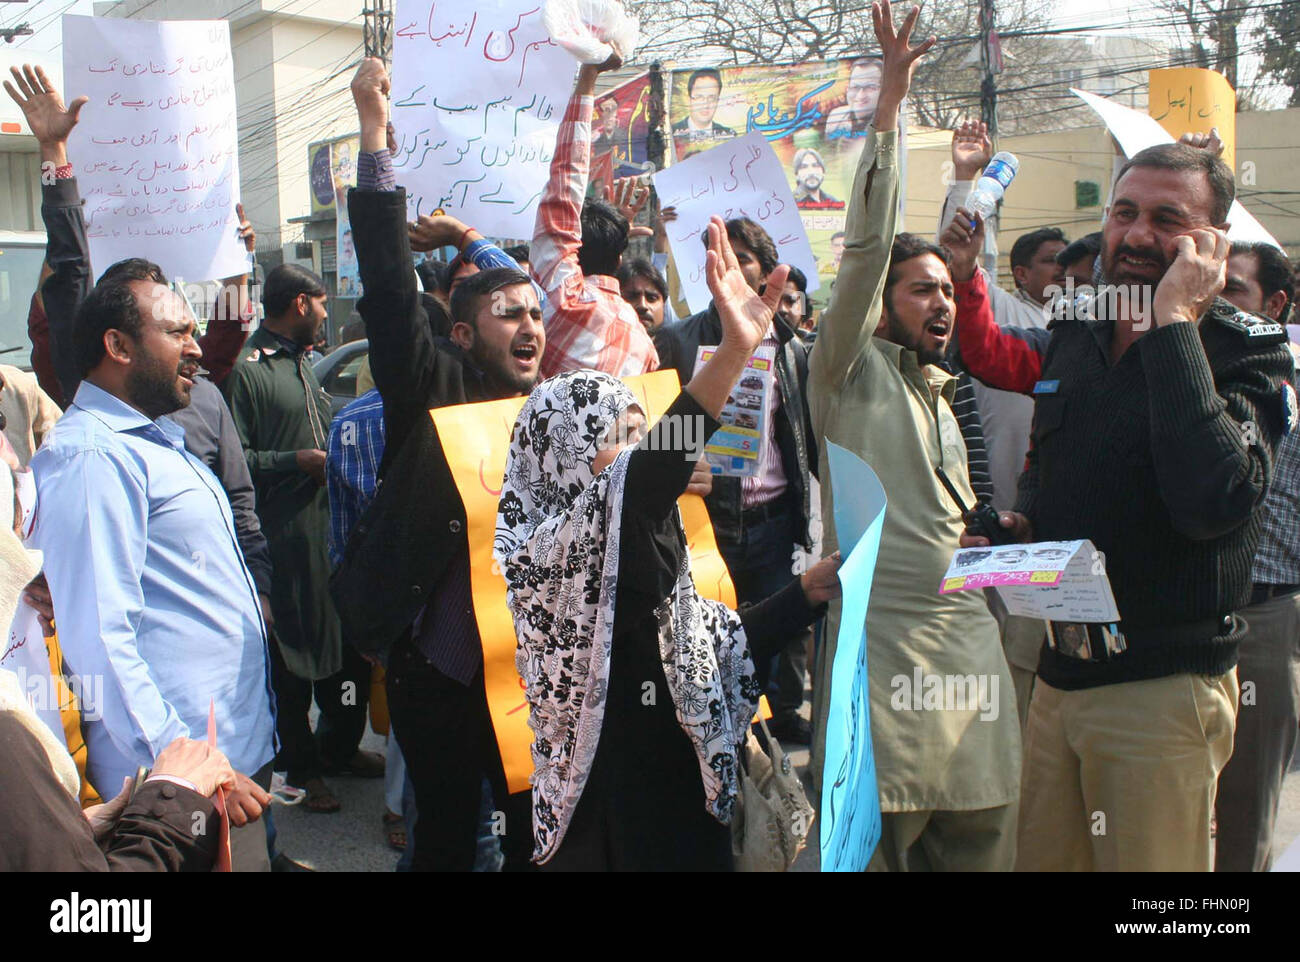 I residenti di Lahore protestano contro le frodi finanziarie in auto e ciclo motore finanziatrice, durante la manifestazione svoltasi a Lahore press club il giovedì, 25 febbraio 2016. Foto Stock